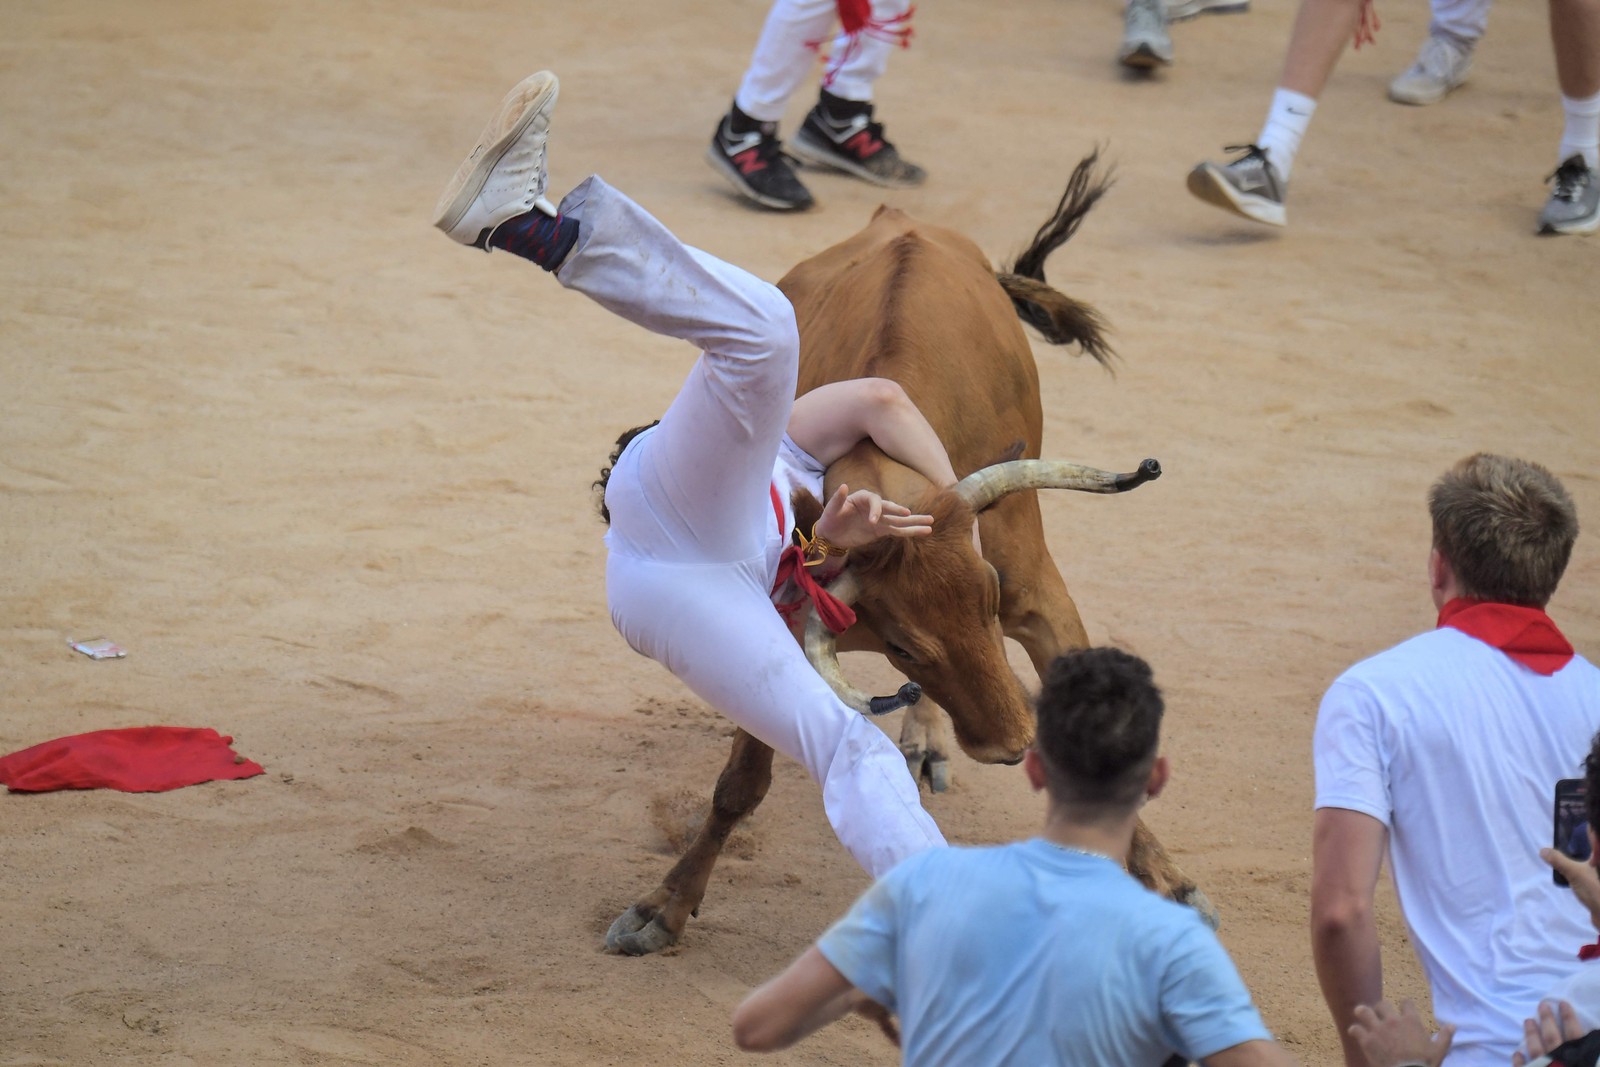 Elas terminam quando o animal é encurralado na arena de tourada — Foto: Jose Jordan / AFP